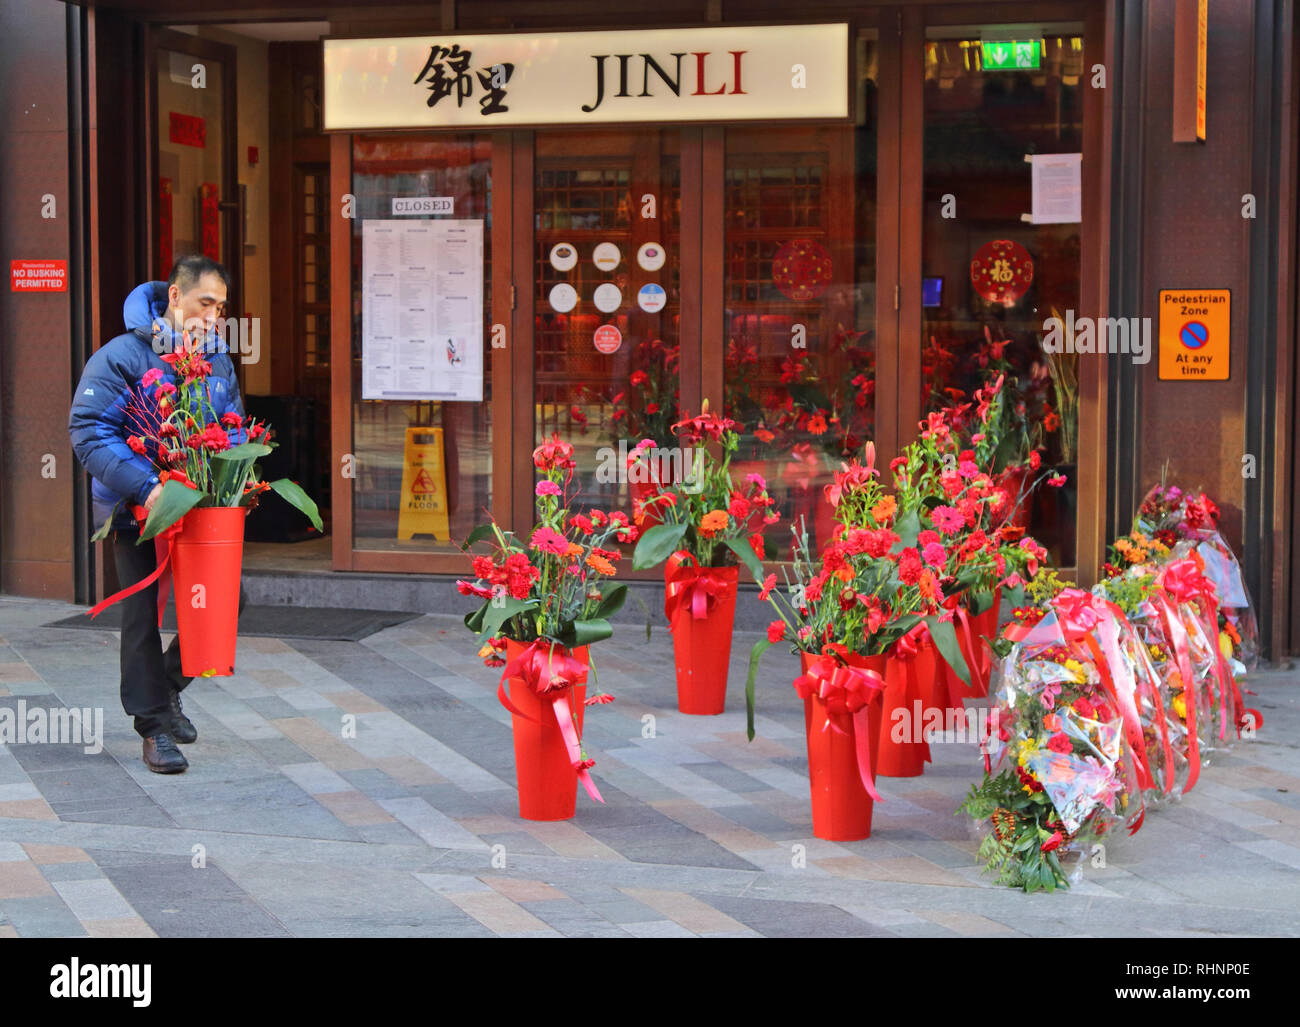 Londra, Regno Unito. 3 febbraio, 2019. Un uomo visto mettendo i fiori al di fuori del suo negozio. Londra Chinatown è pronto per il Capodanno cinese, l'anno del maiale, la nuova lanterne cinesi sono in posizione, le decorazioni sono finito per il nuovo anno cinese, che inizia ufficialmente il 5 febbraio. Credito: Keith Mayhew/SOPA Immagini/ZUMA filo/Alamy Live News Foto Stock